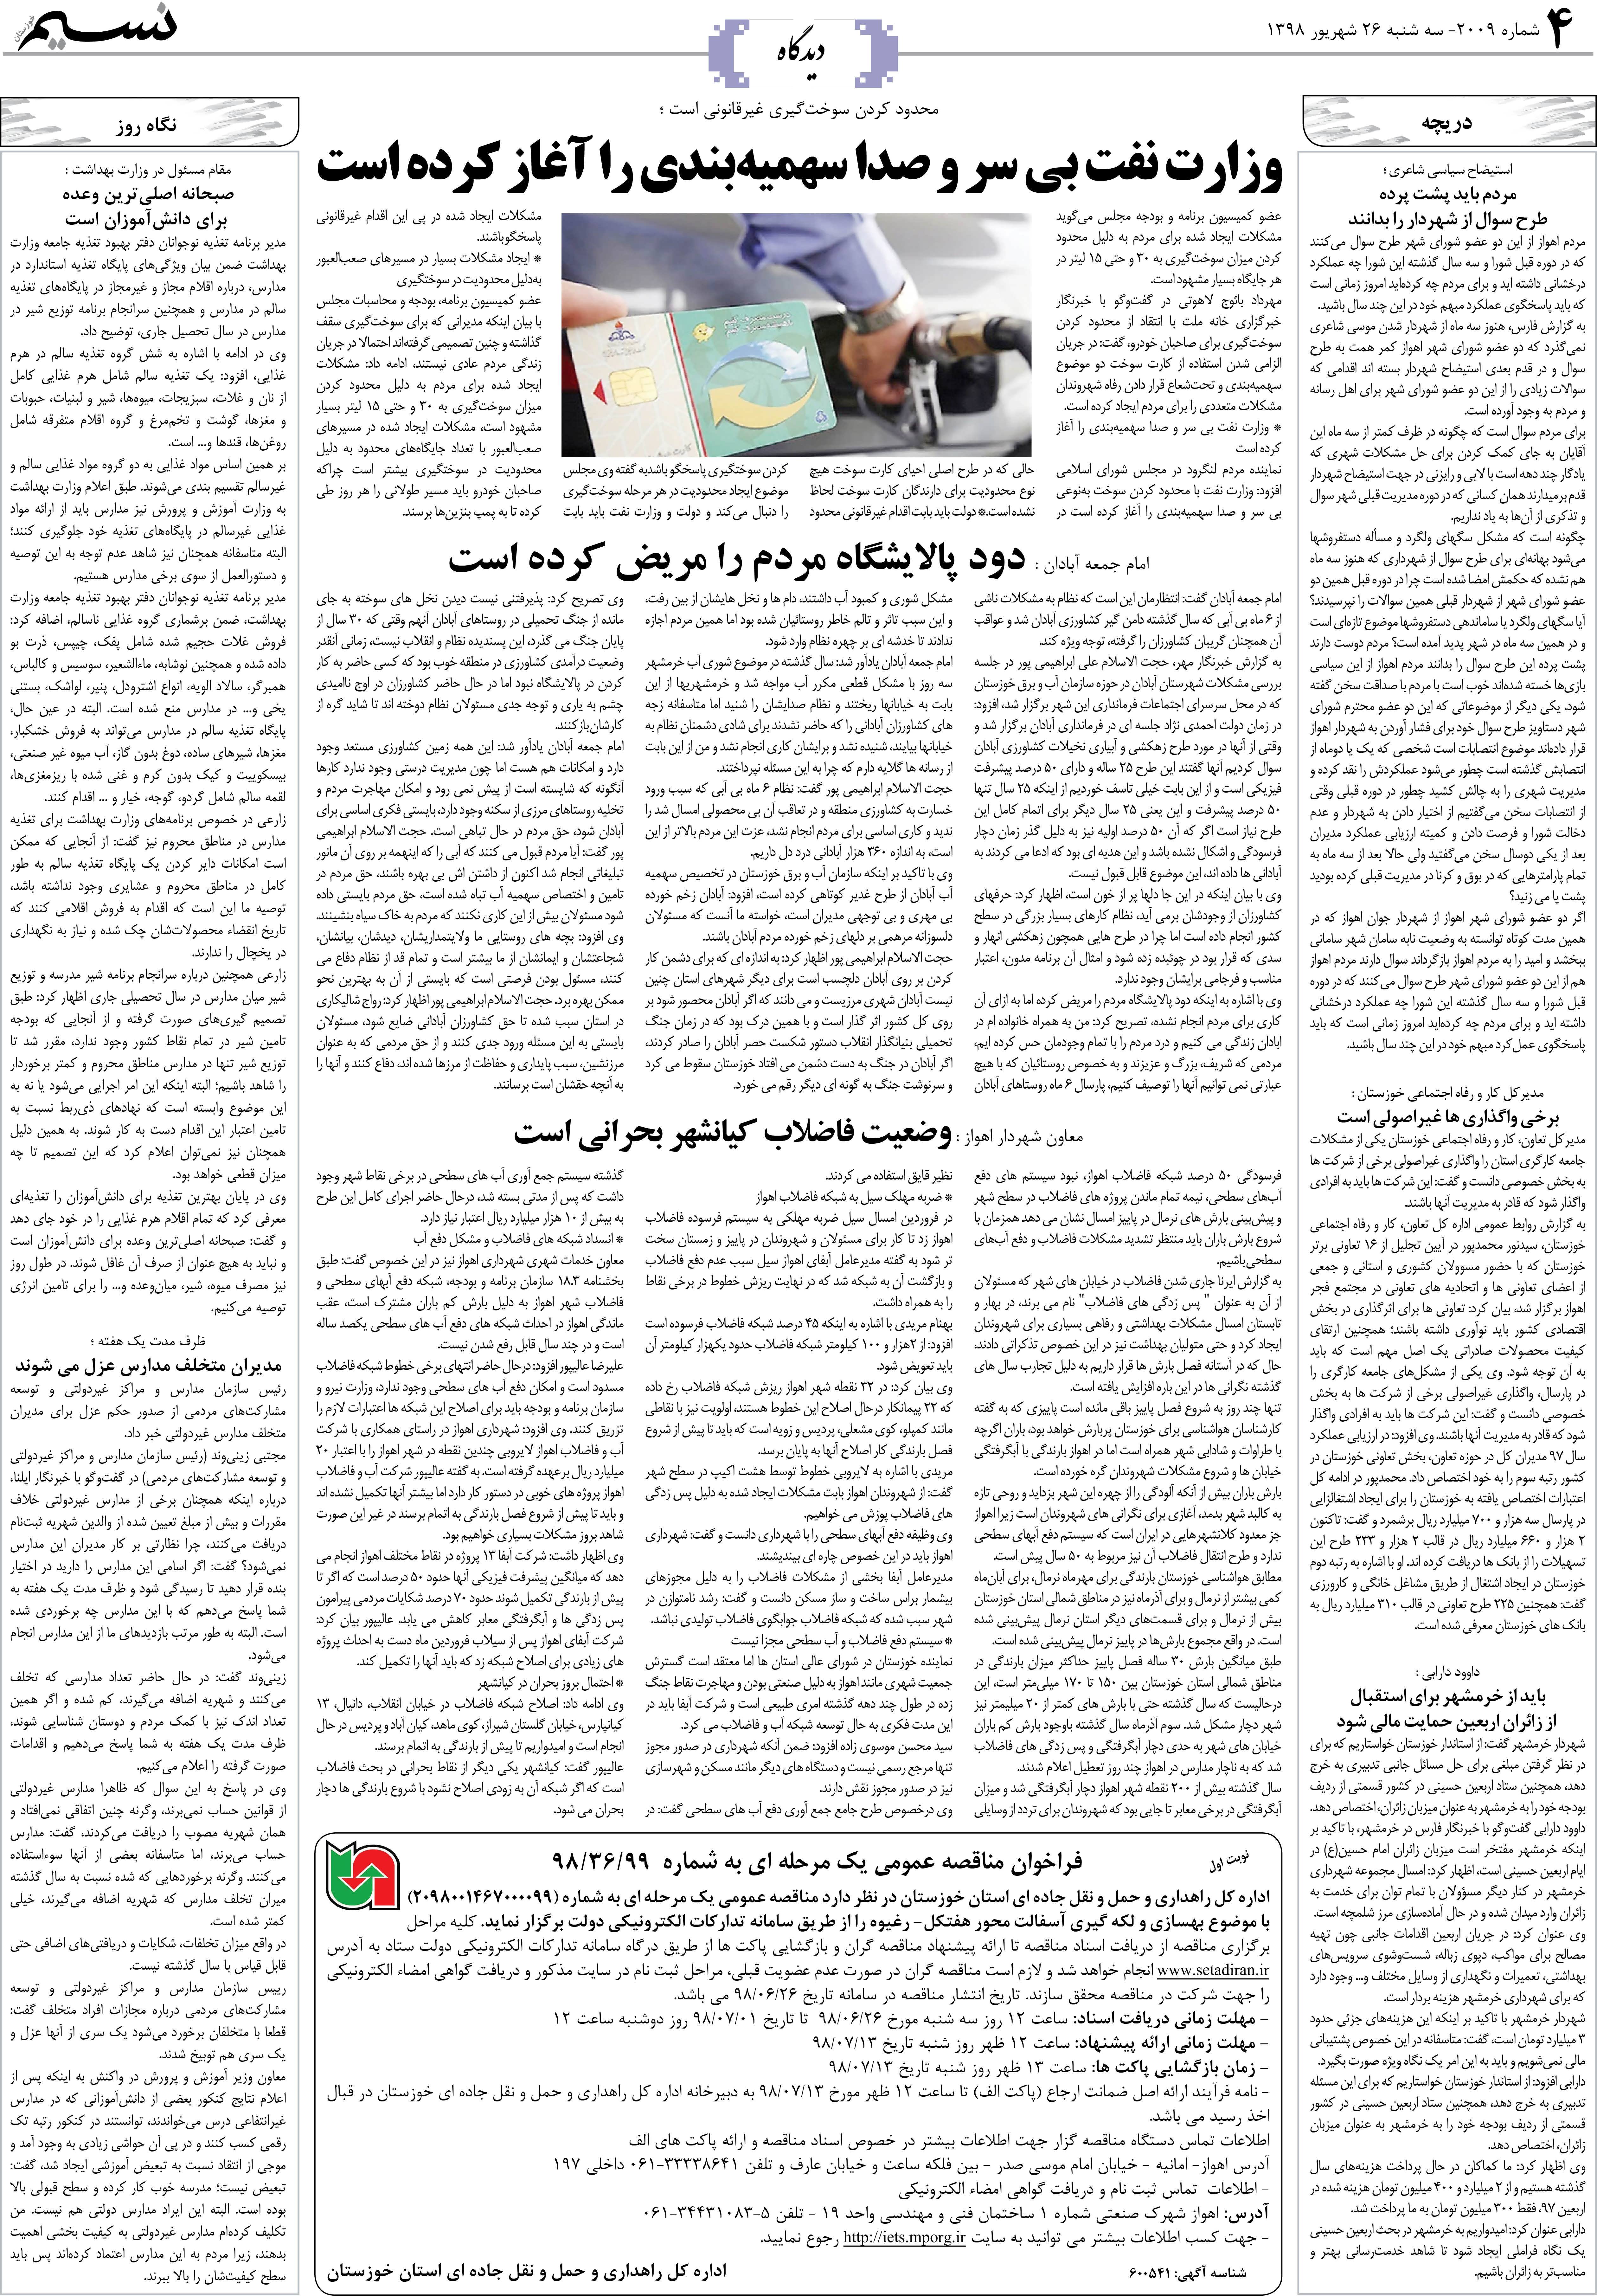 صفحه دیدگاه روزنامه نسیم شماره 2009